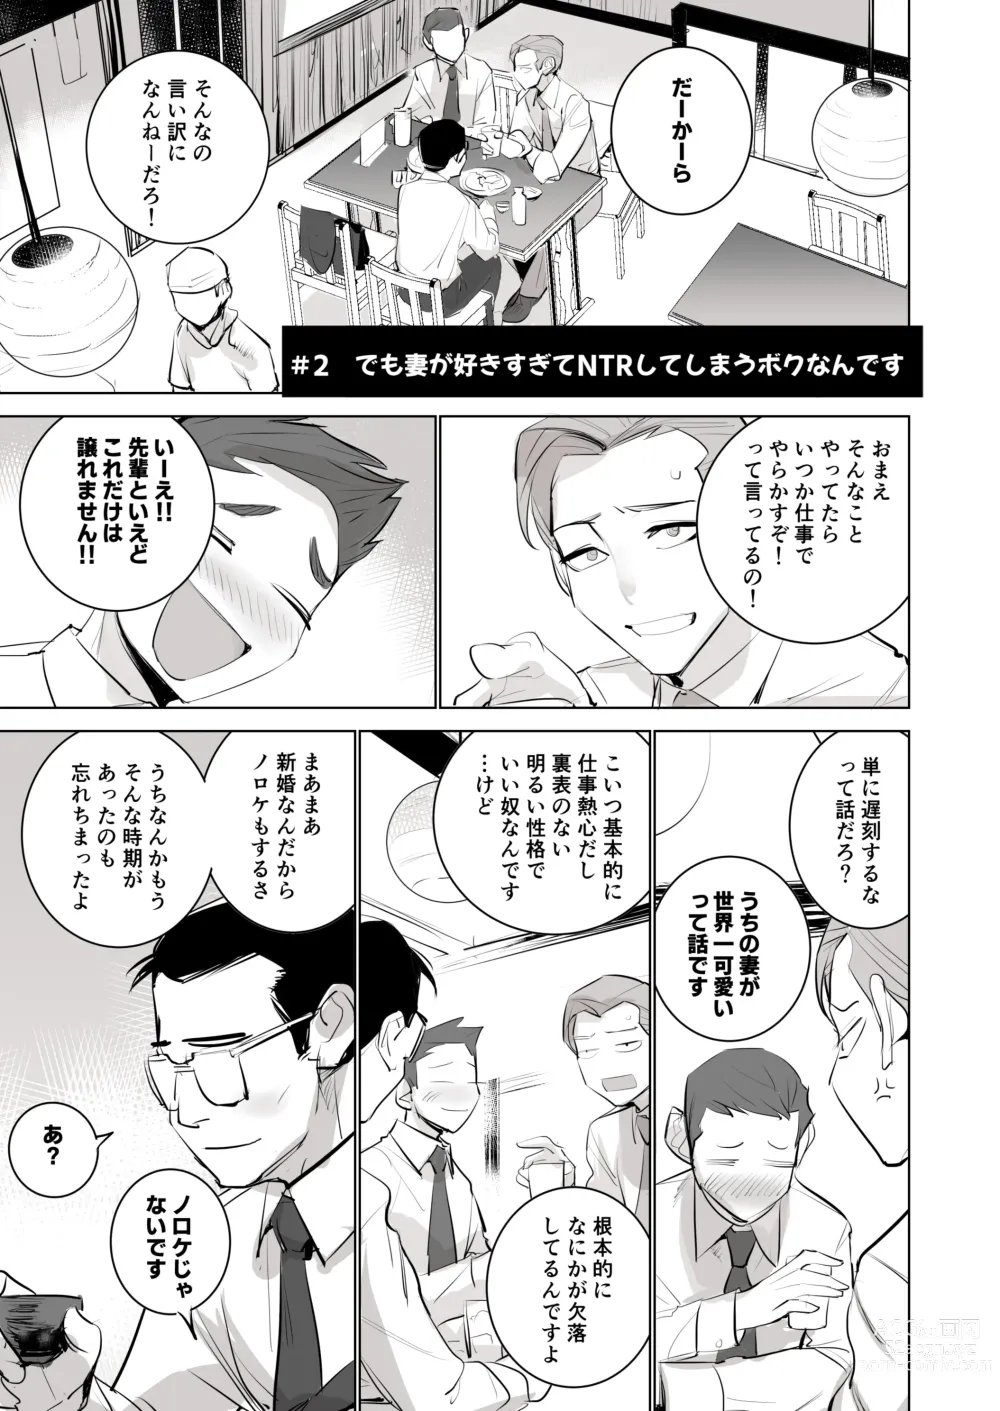 Page 27 of doujinshi 人気同人作家の妻とラブラブ新婚性活でも妻が好きすぎてNTRしてしまうボクなんです